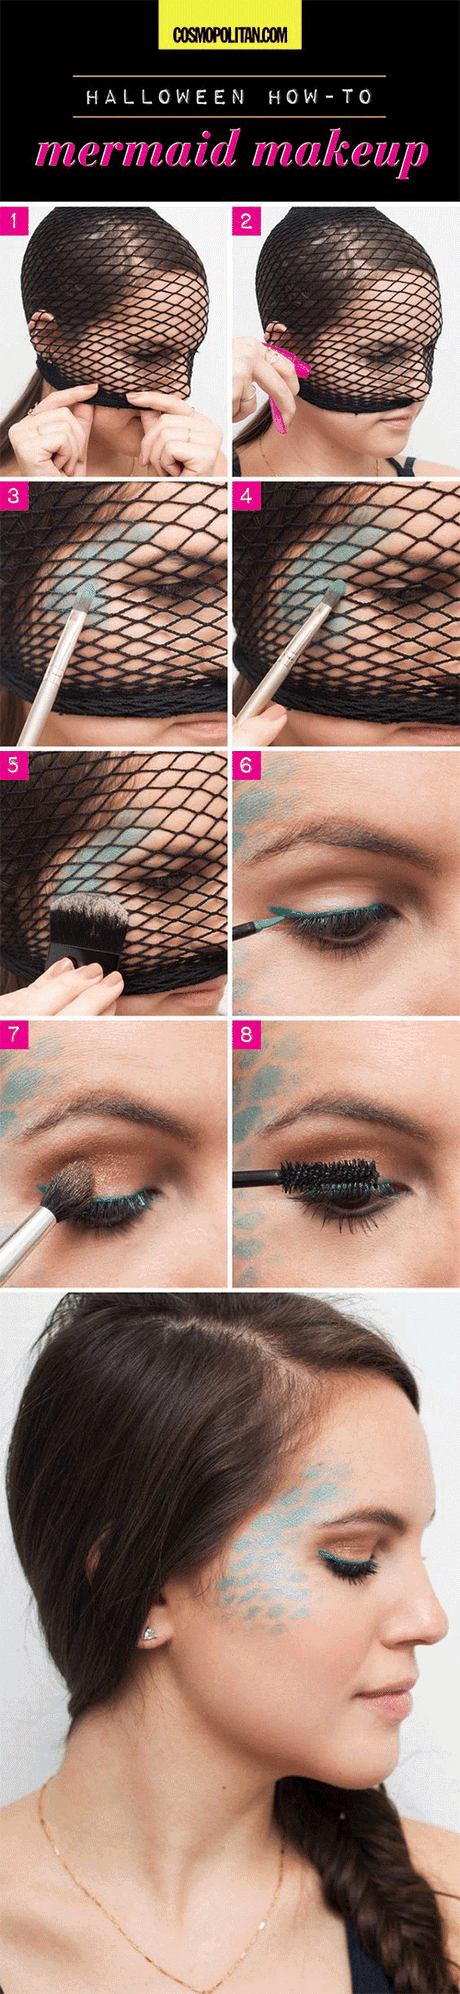 Make-up tutorials beginner